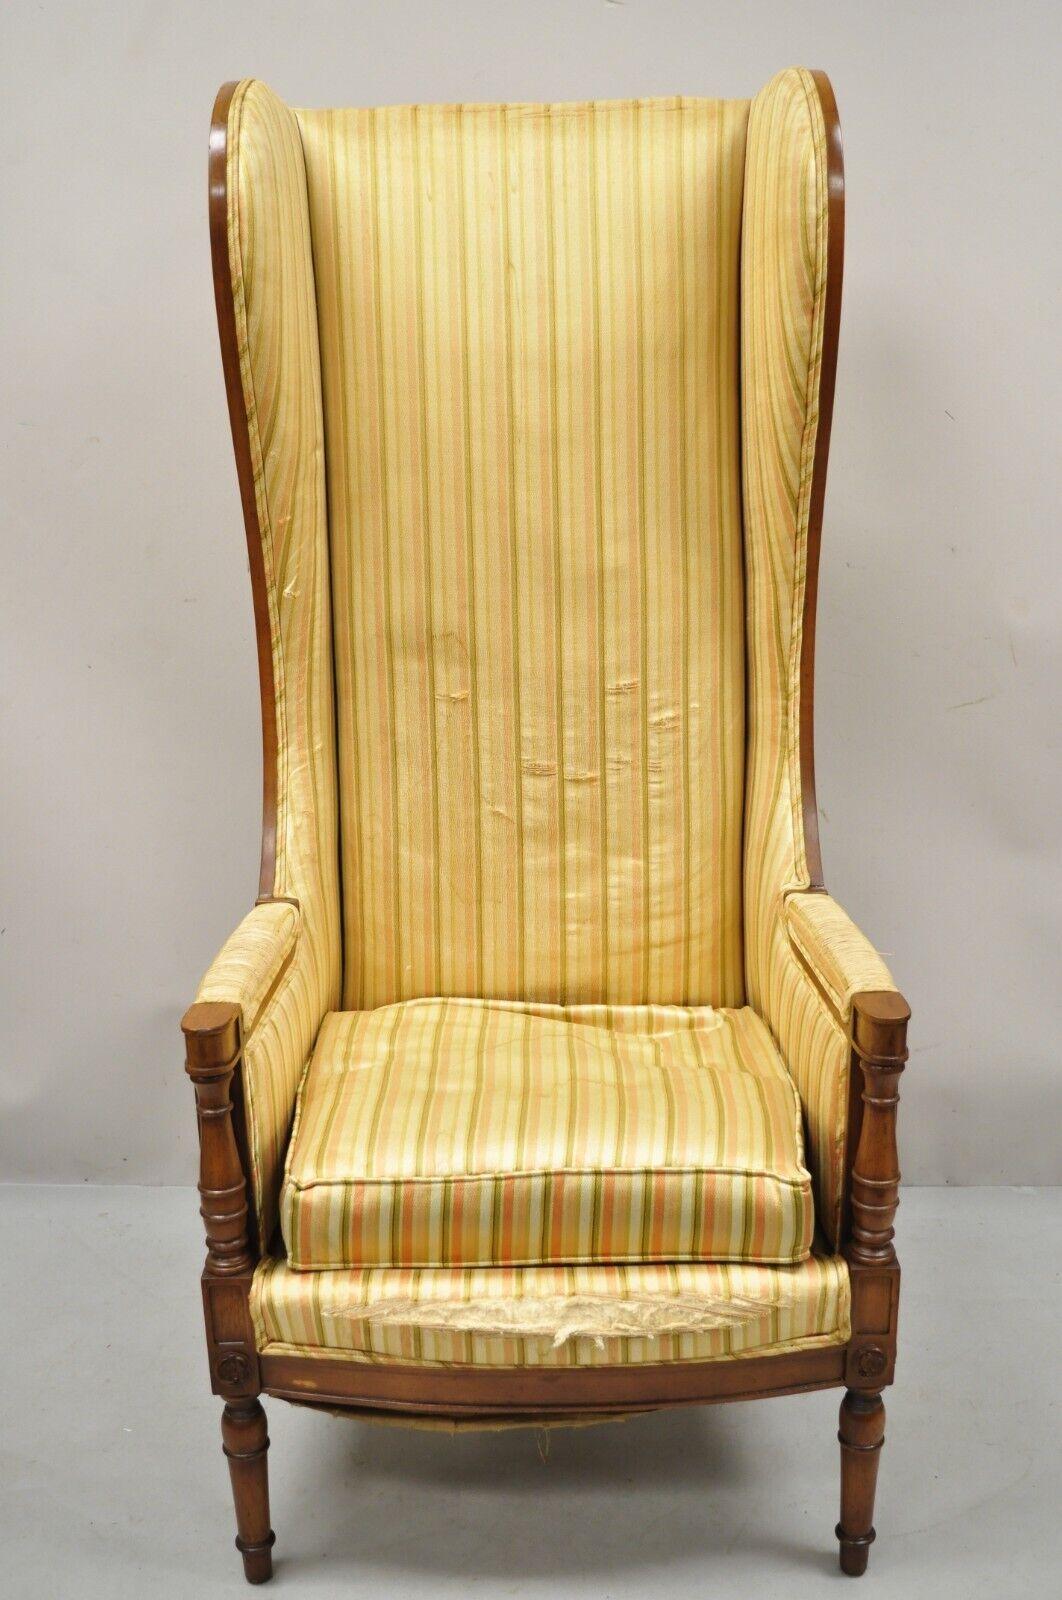 Vintage High Back Französisch Hollywood Regency stattlichen Thron Lounge-Sessel. Artikel verfügt über eine hohe stattliche Form, Massivholzrahmen, schöne Holzmaserung, verjüngte Beine, sehr schöne Vintage Artikel, großen Stil und Form. Etwa Mitte